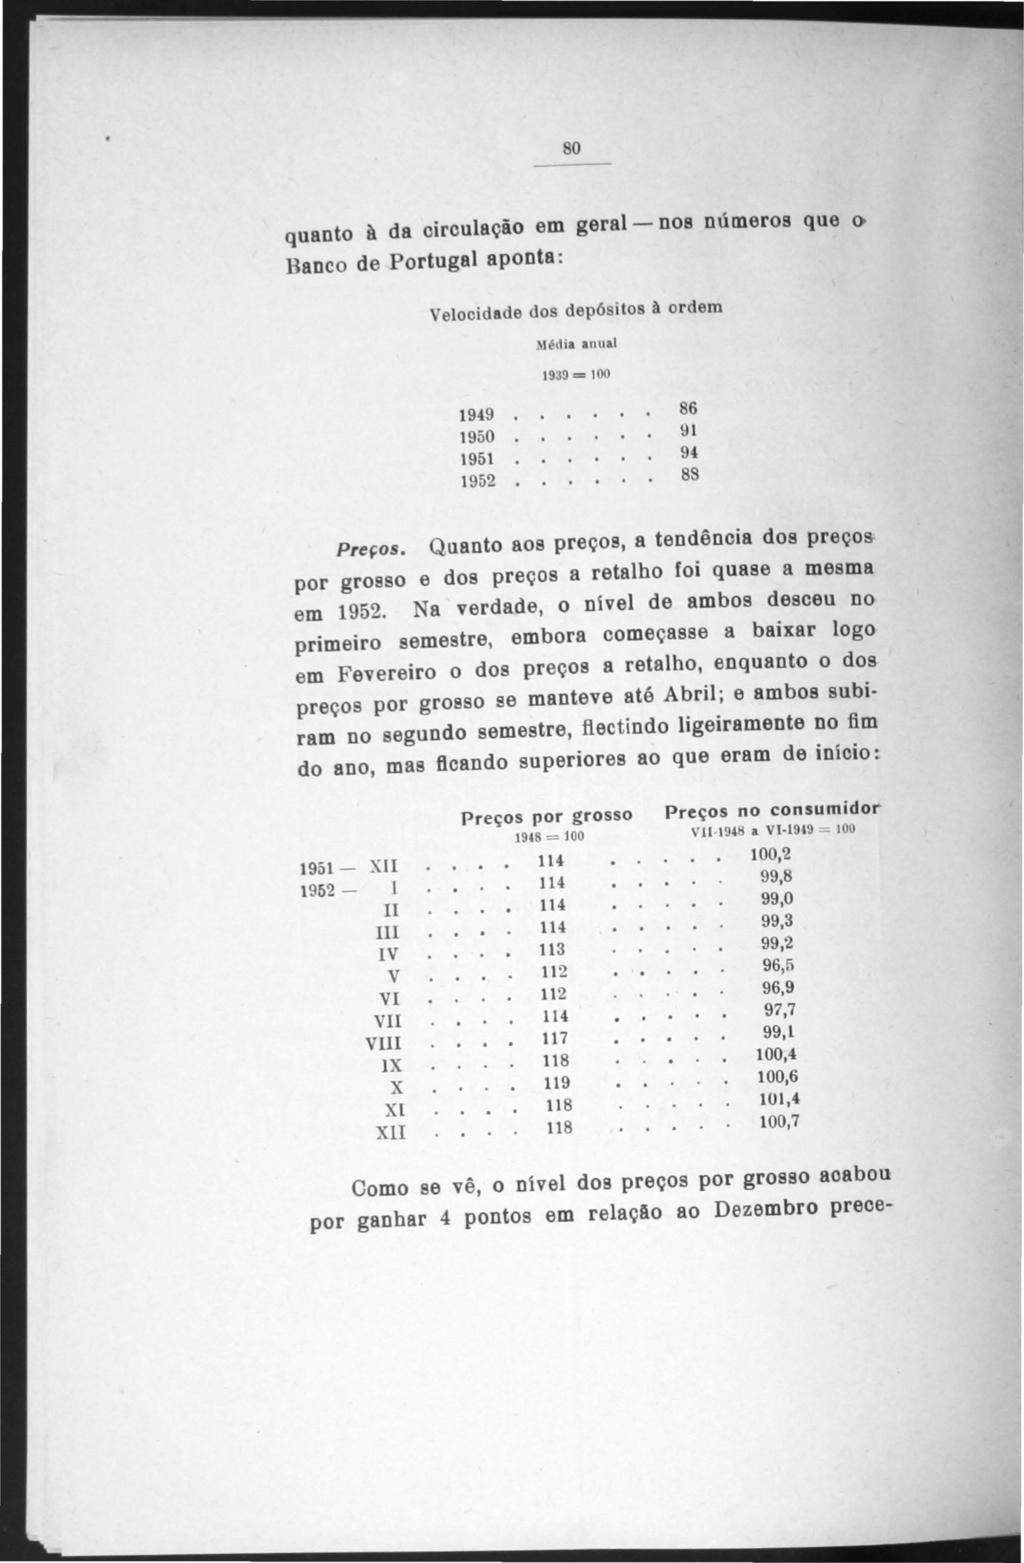 o quanto à da oiroulação em geral- nos números que () Banco de Portugal aponta: elocidade dos dep6 itos à ordem Média anual 1939 = 100 1949 1950 1951 1952 86!H 9<1 8S Preços.